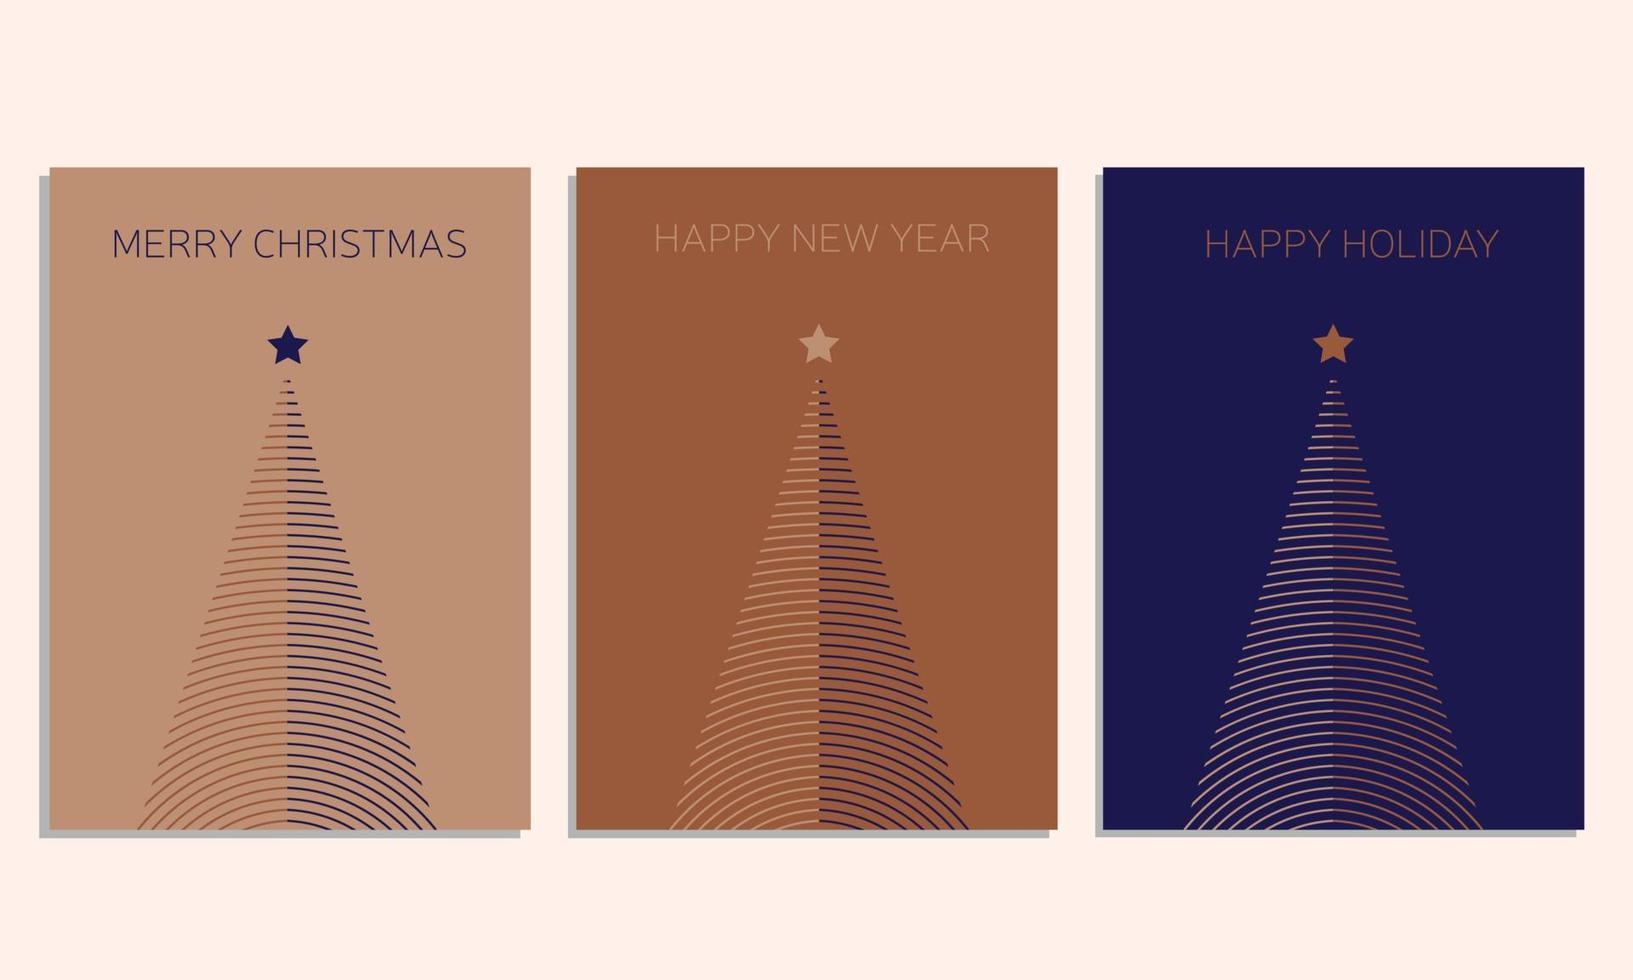 moderne firmenfeiertagskarten mit weihnachtsbaum, vögeln, verziertem blumenrahmen, hintergrund und kopienraum. universelle künstlerische Vorlagen. vektor